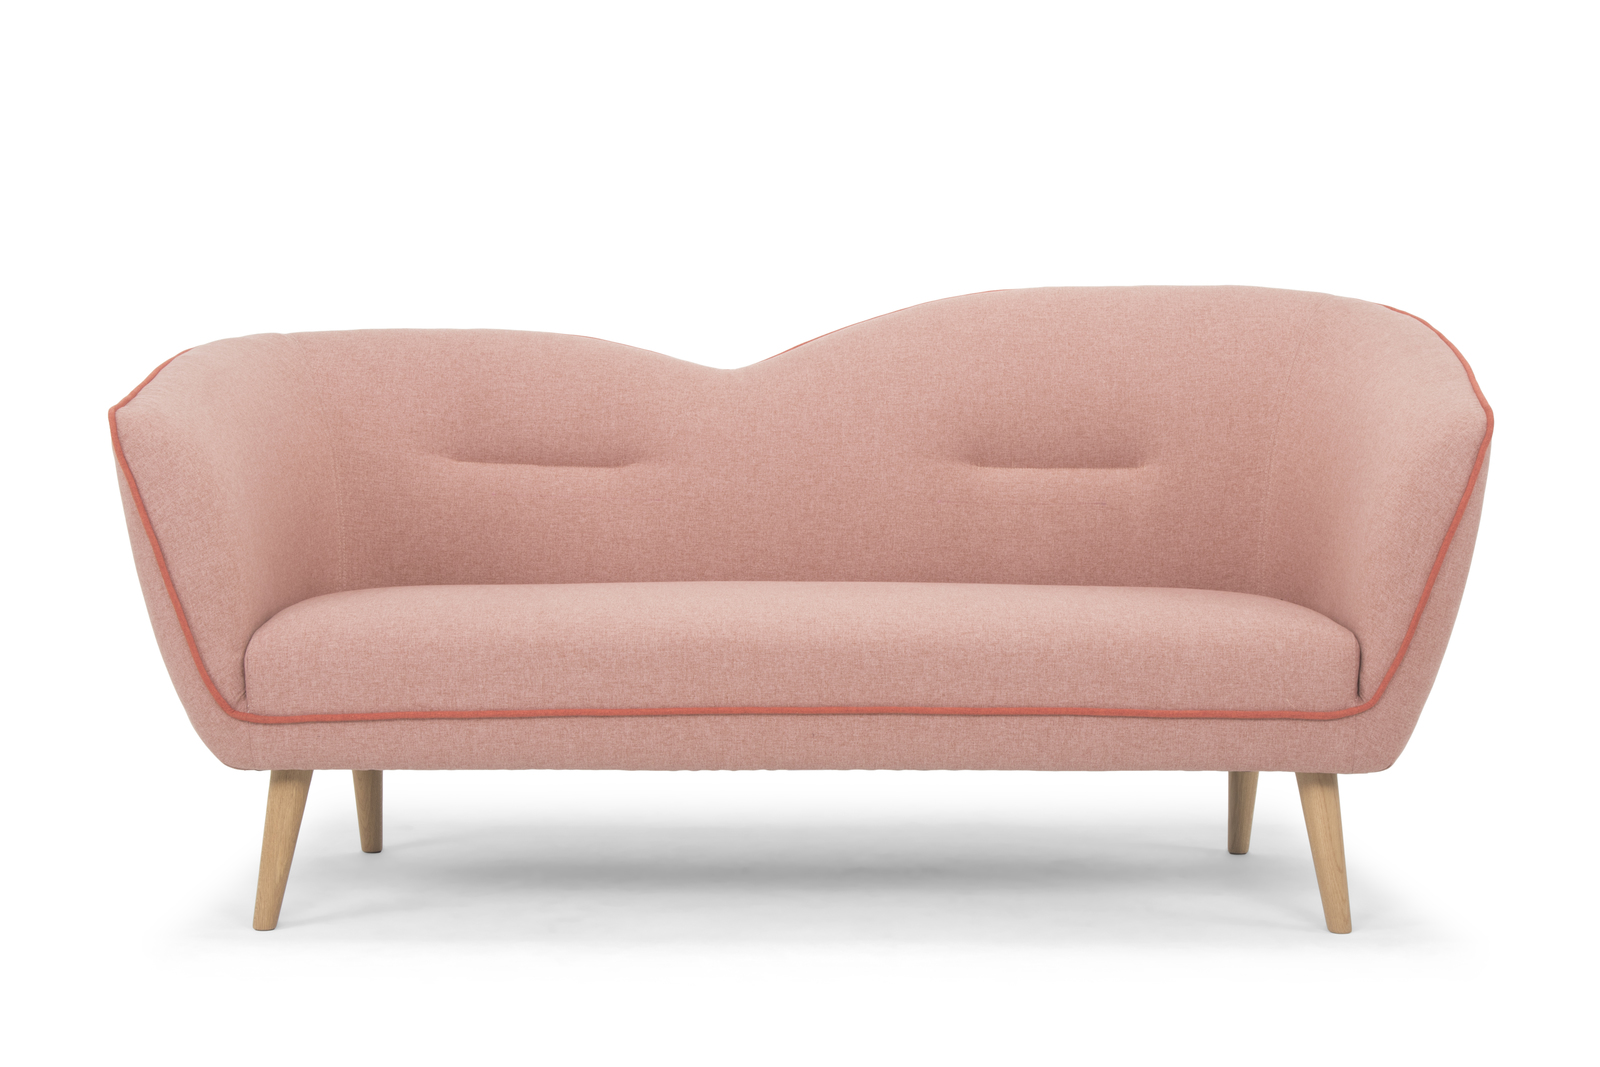 blush pink sofa bed uk